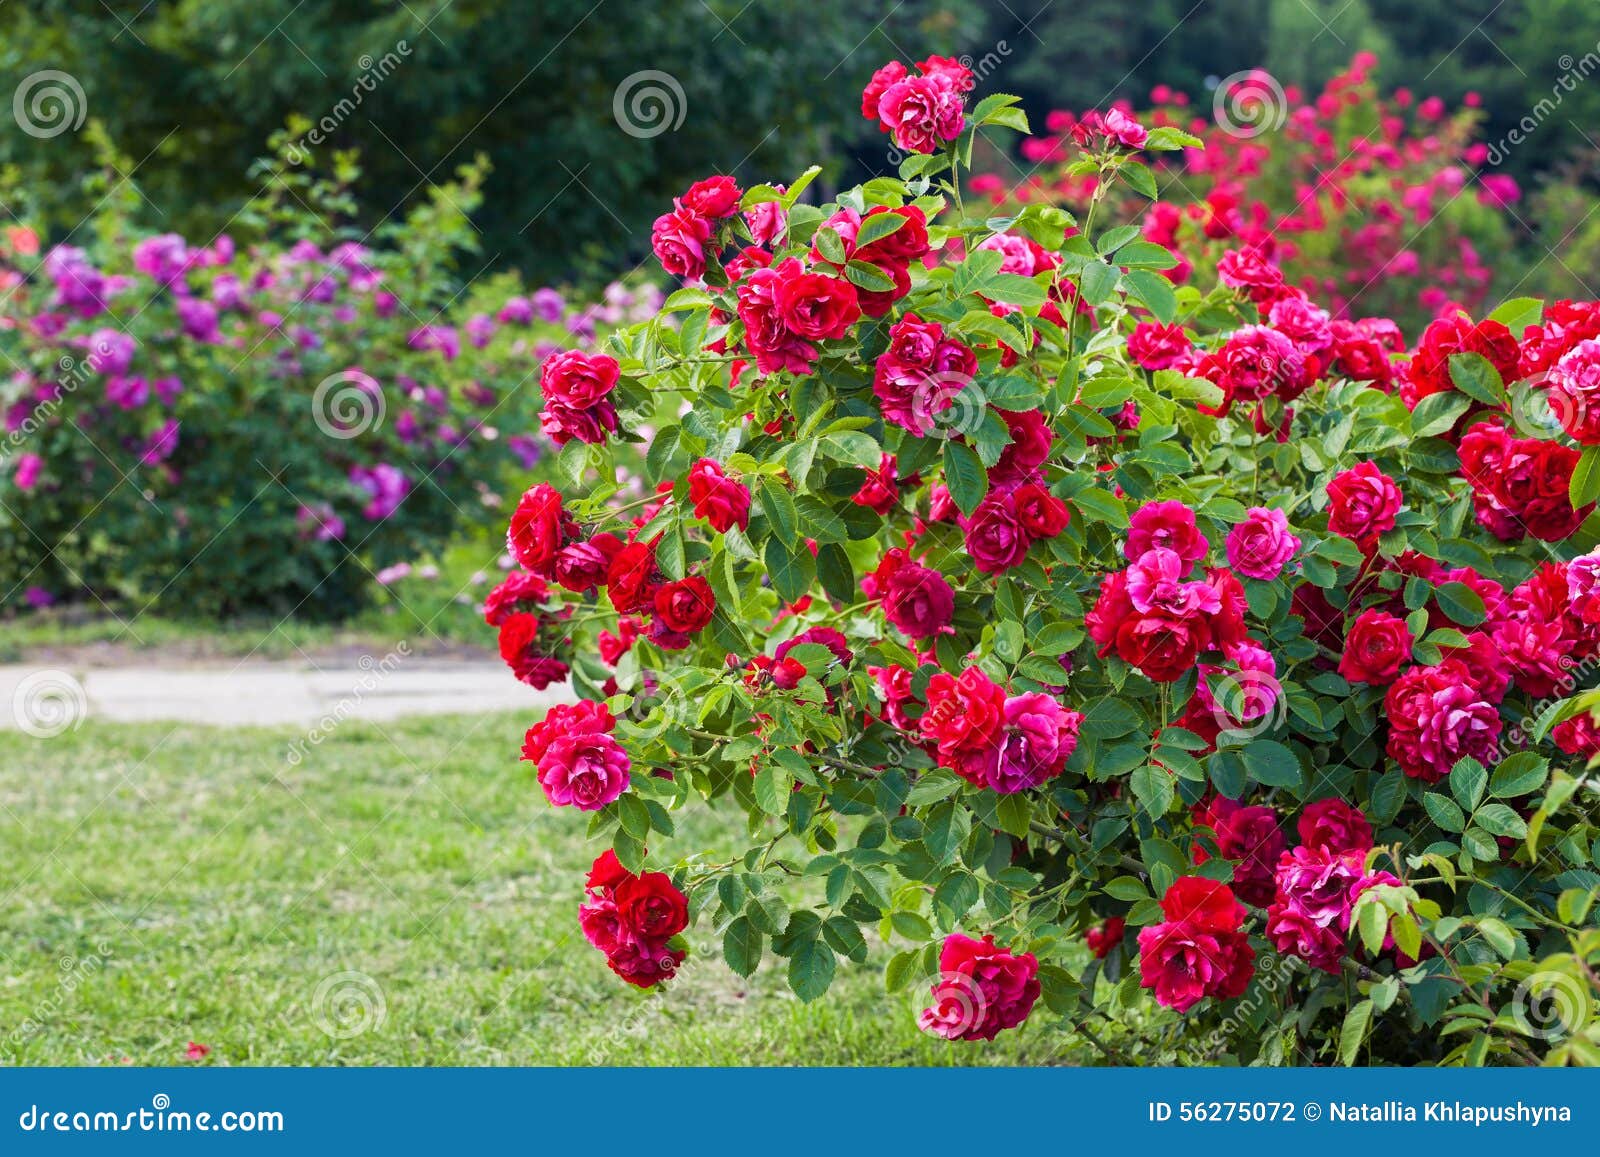 roses bush on garden